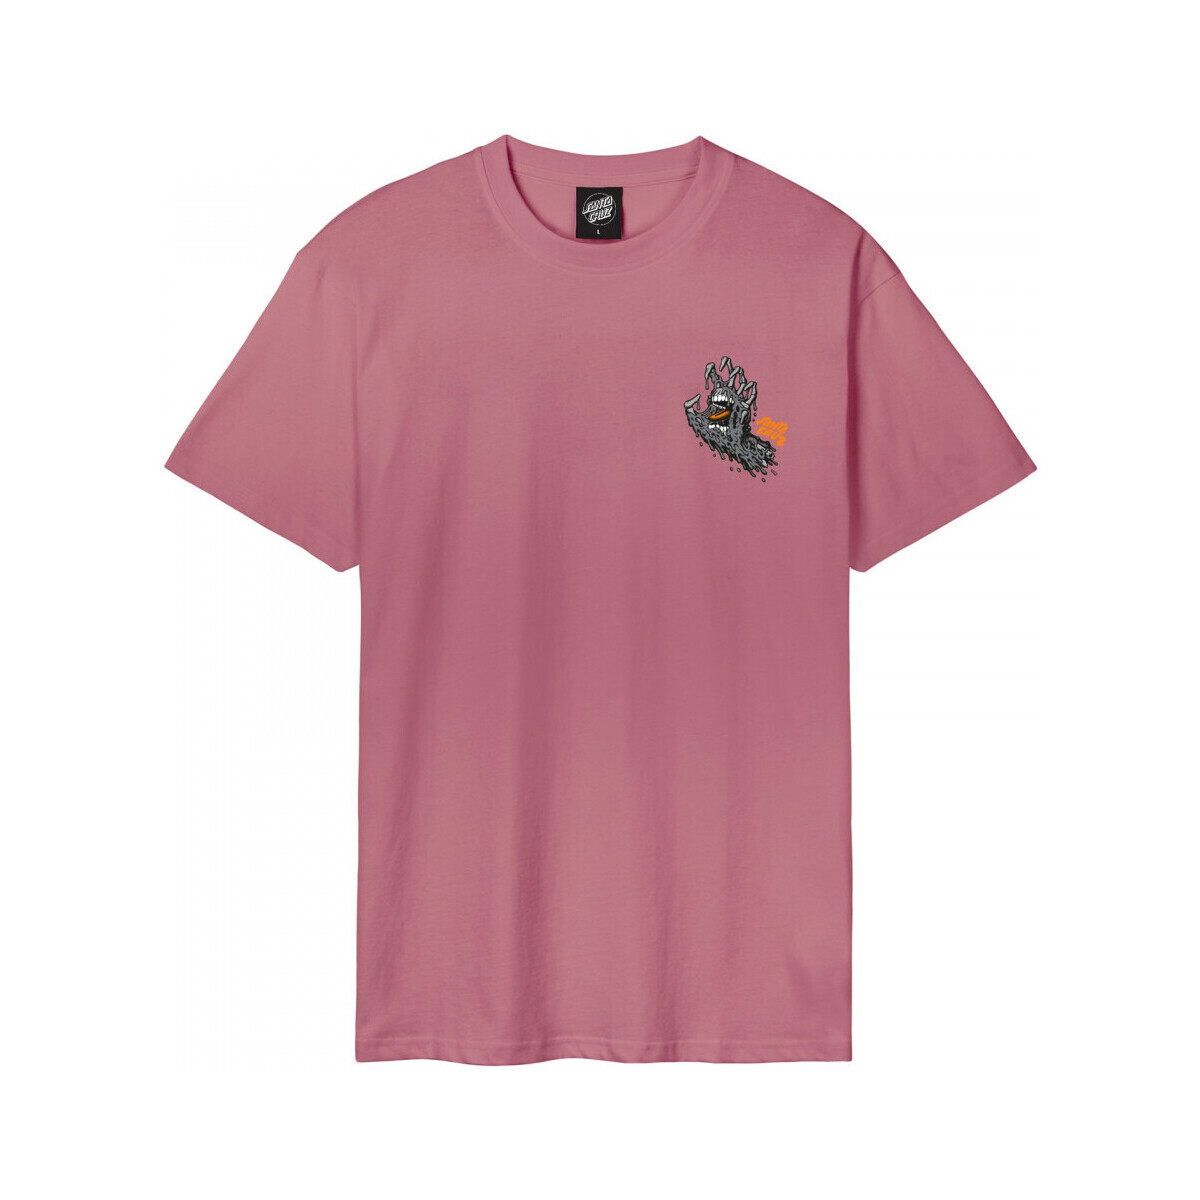 Oblačila Moški Majice & Polo majice Santa Cruz Melting hand Rožnata